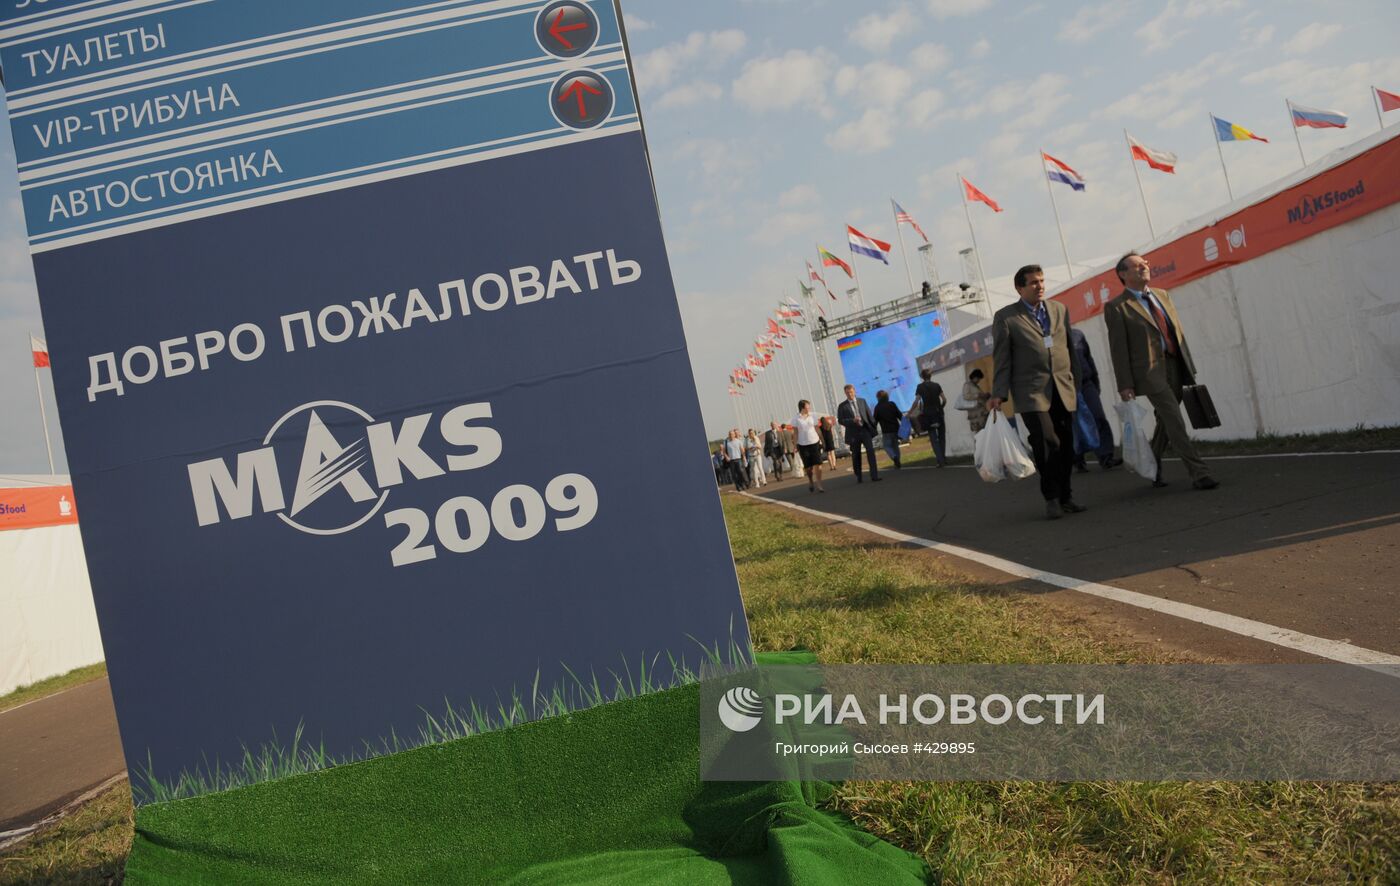 Авиакосмический салон "МАКС-2009" открывается в Жуковском